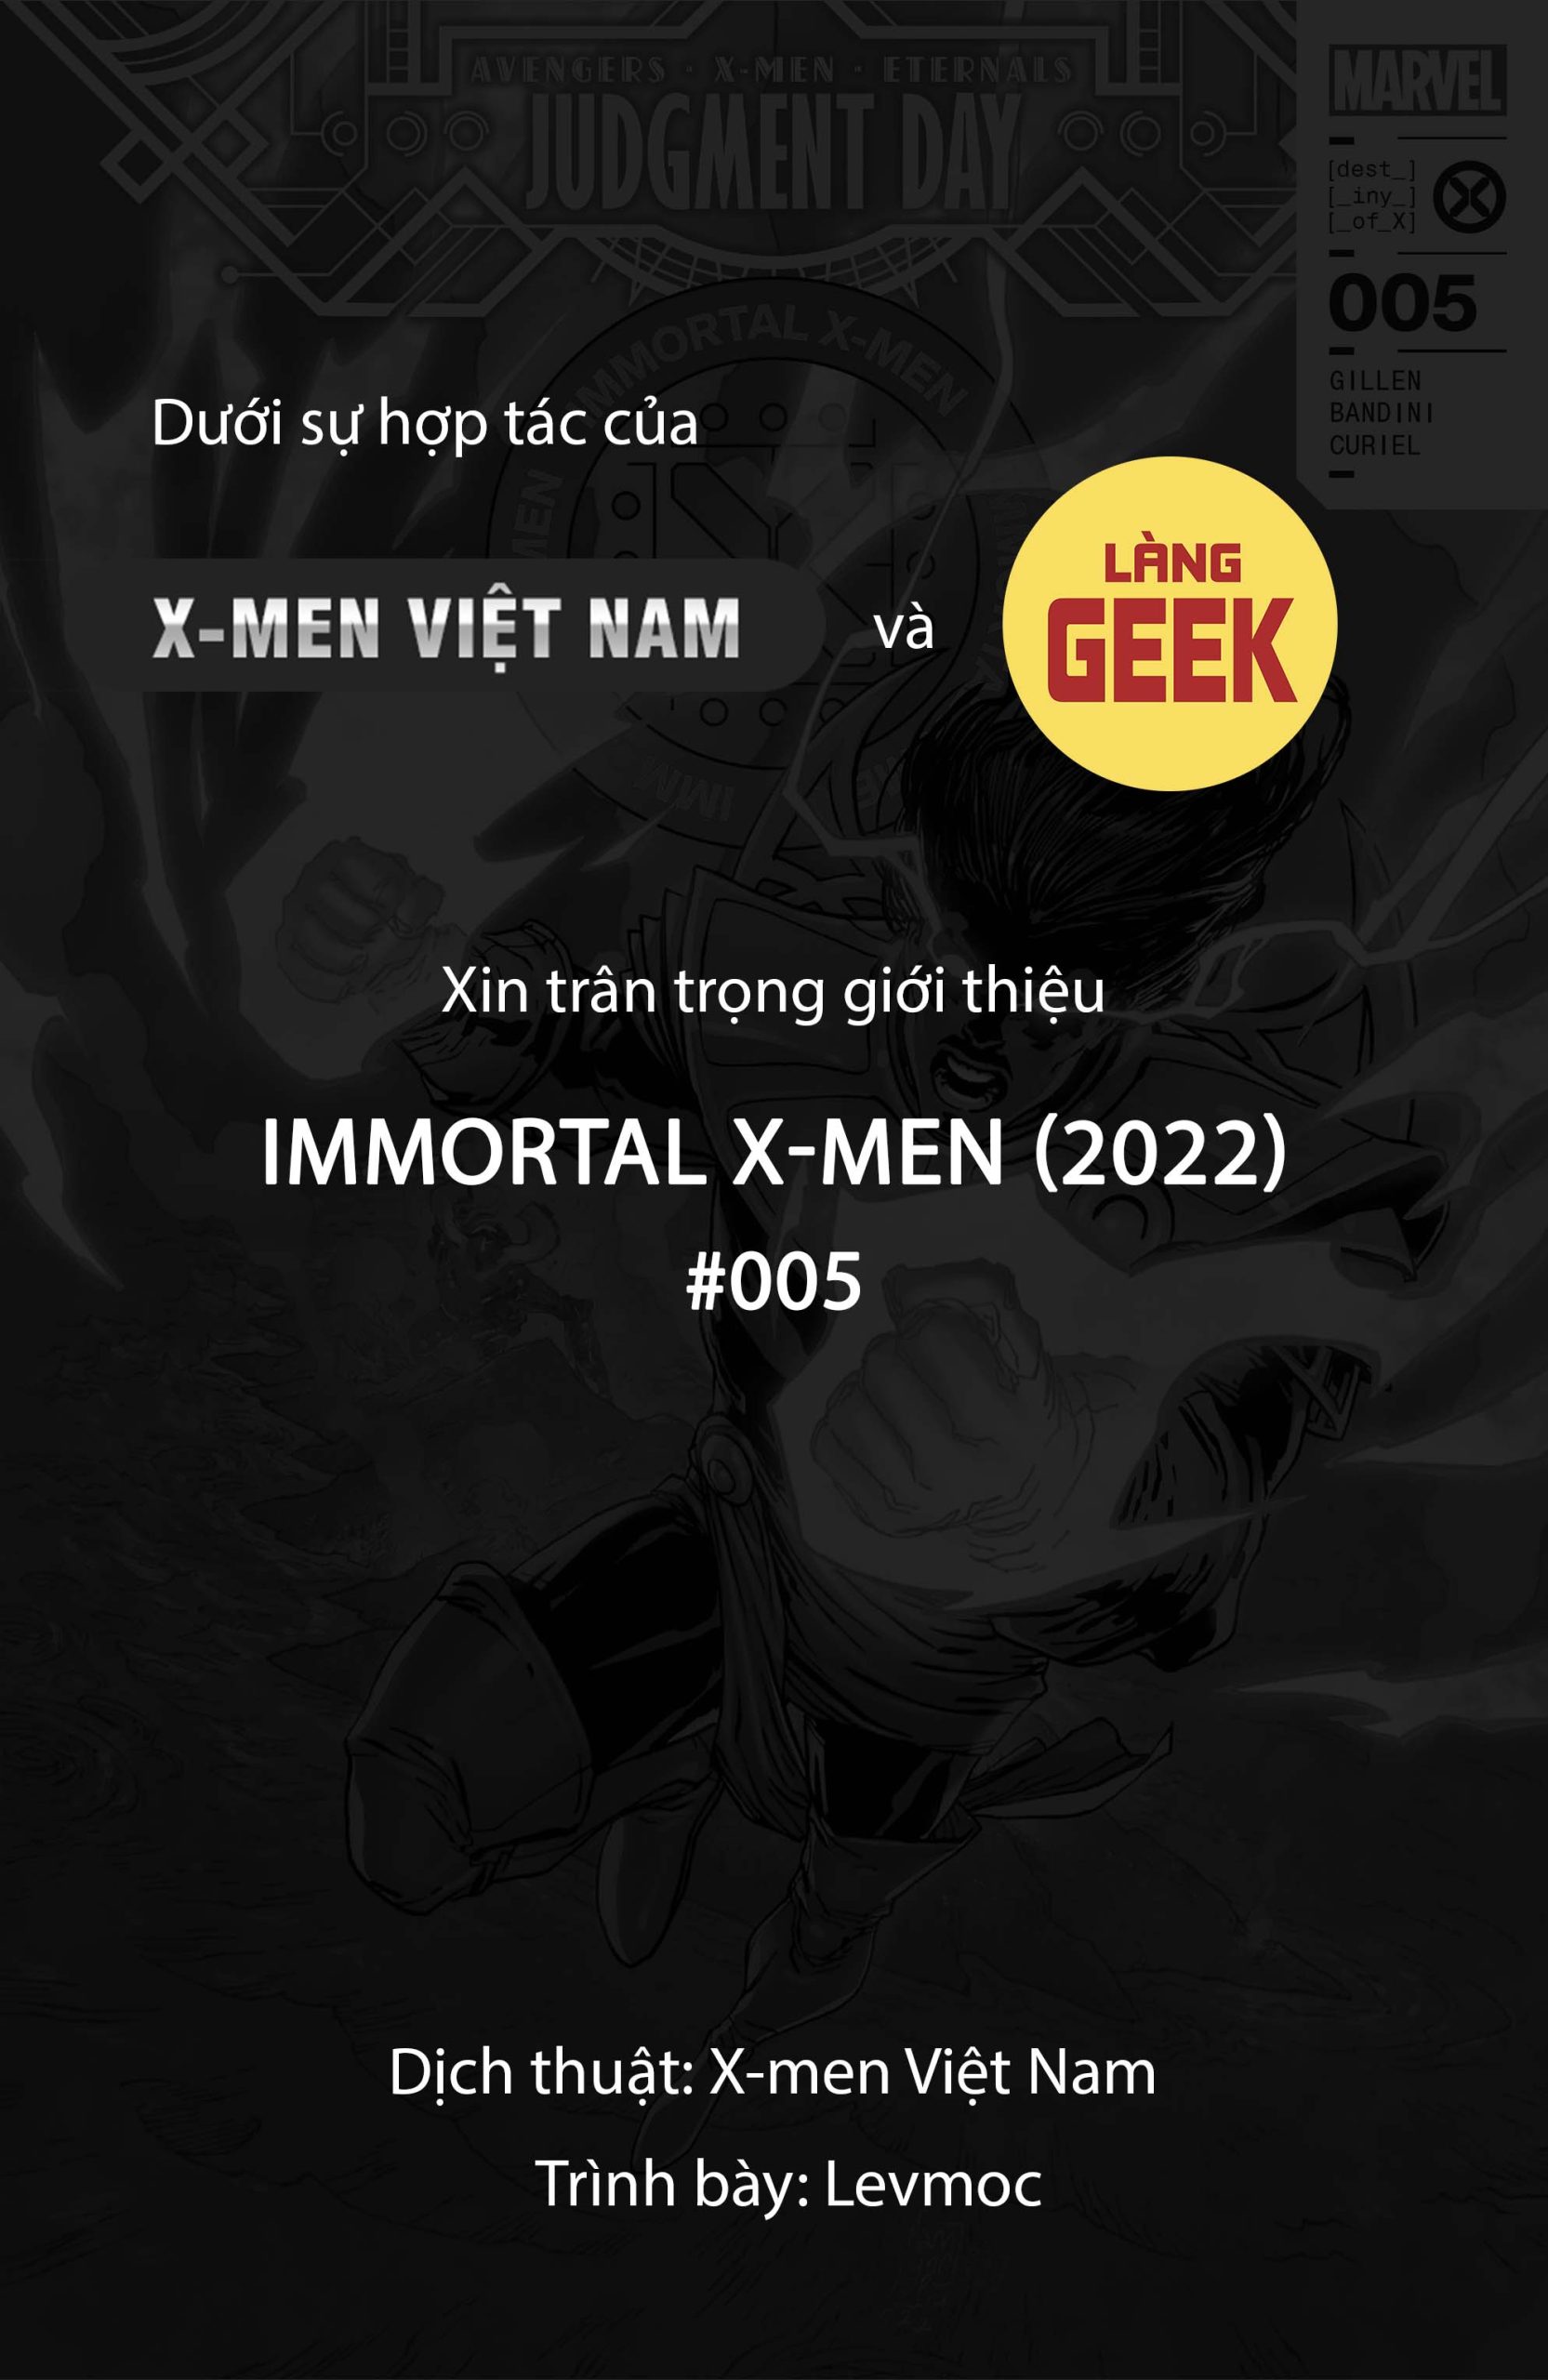 https://langgeek.net/wp-content/webpc-passthru.php?src=https://langgeek.net/wp-content/uploads/2022/08/Immortal-X-Men-2022-005-000-1-scaled.jpg&nocache=1